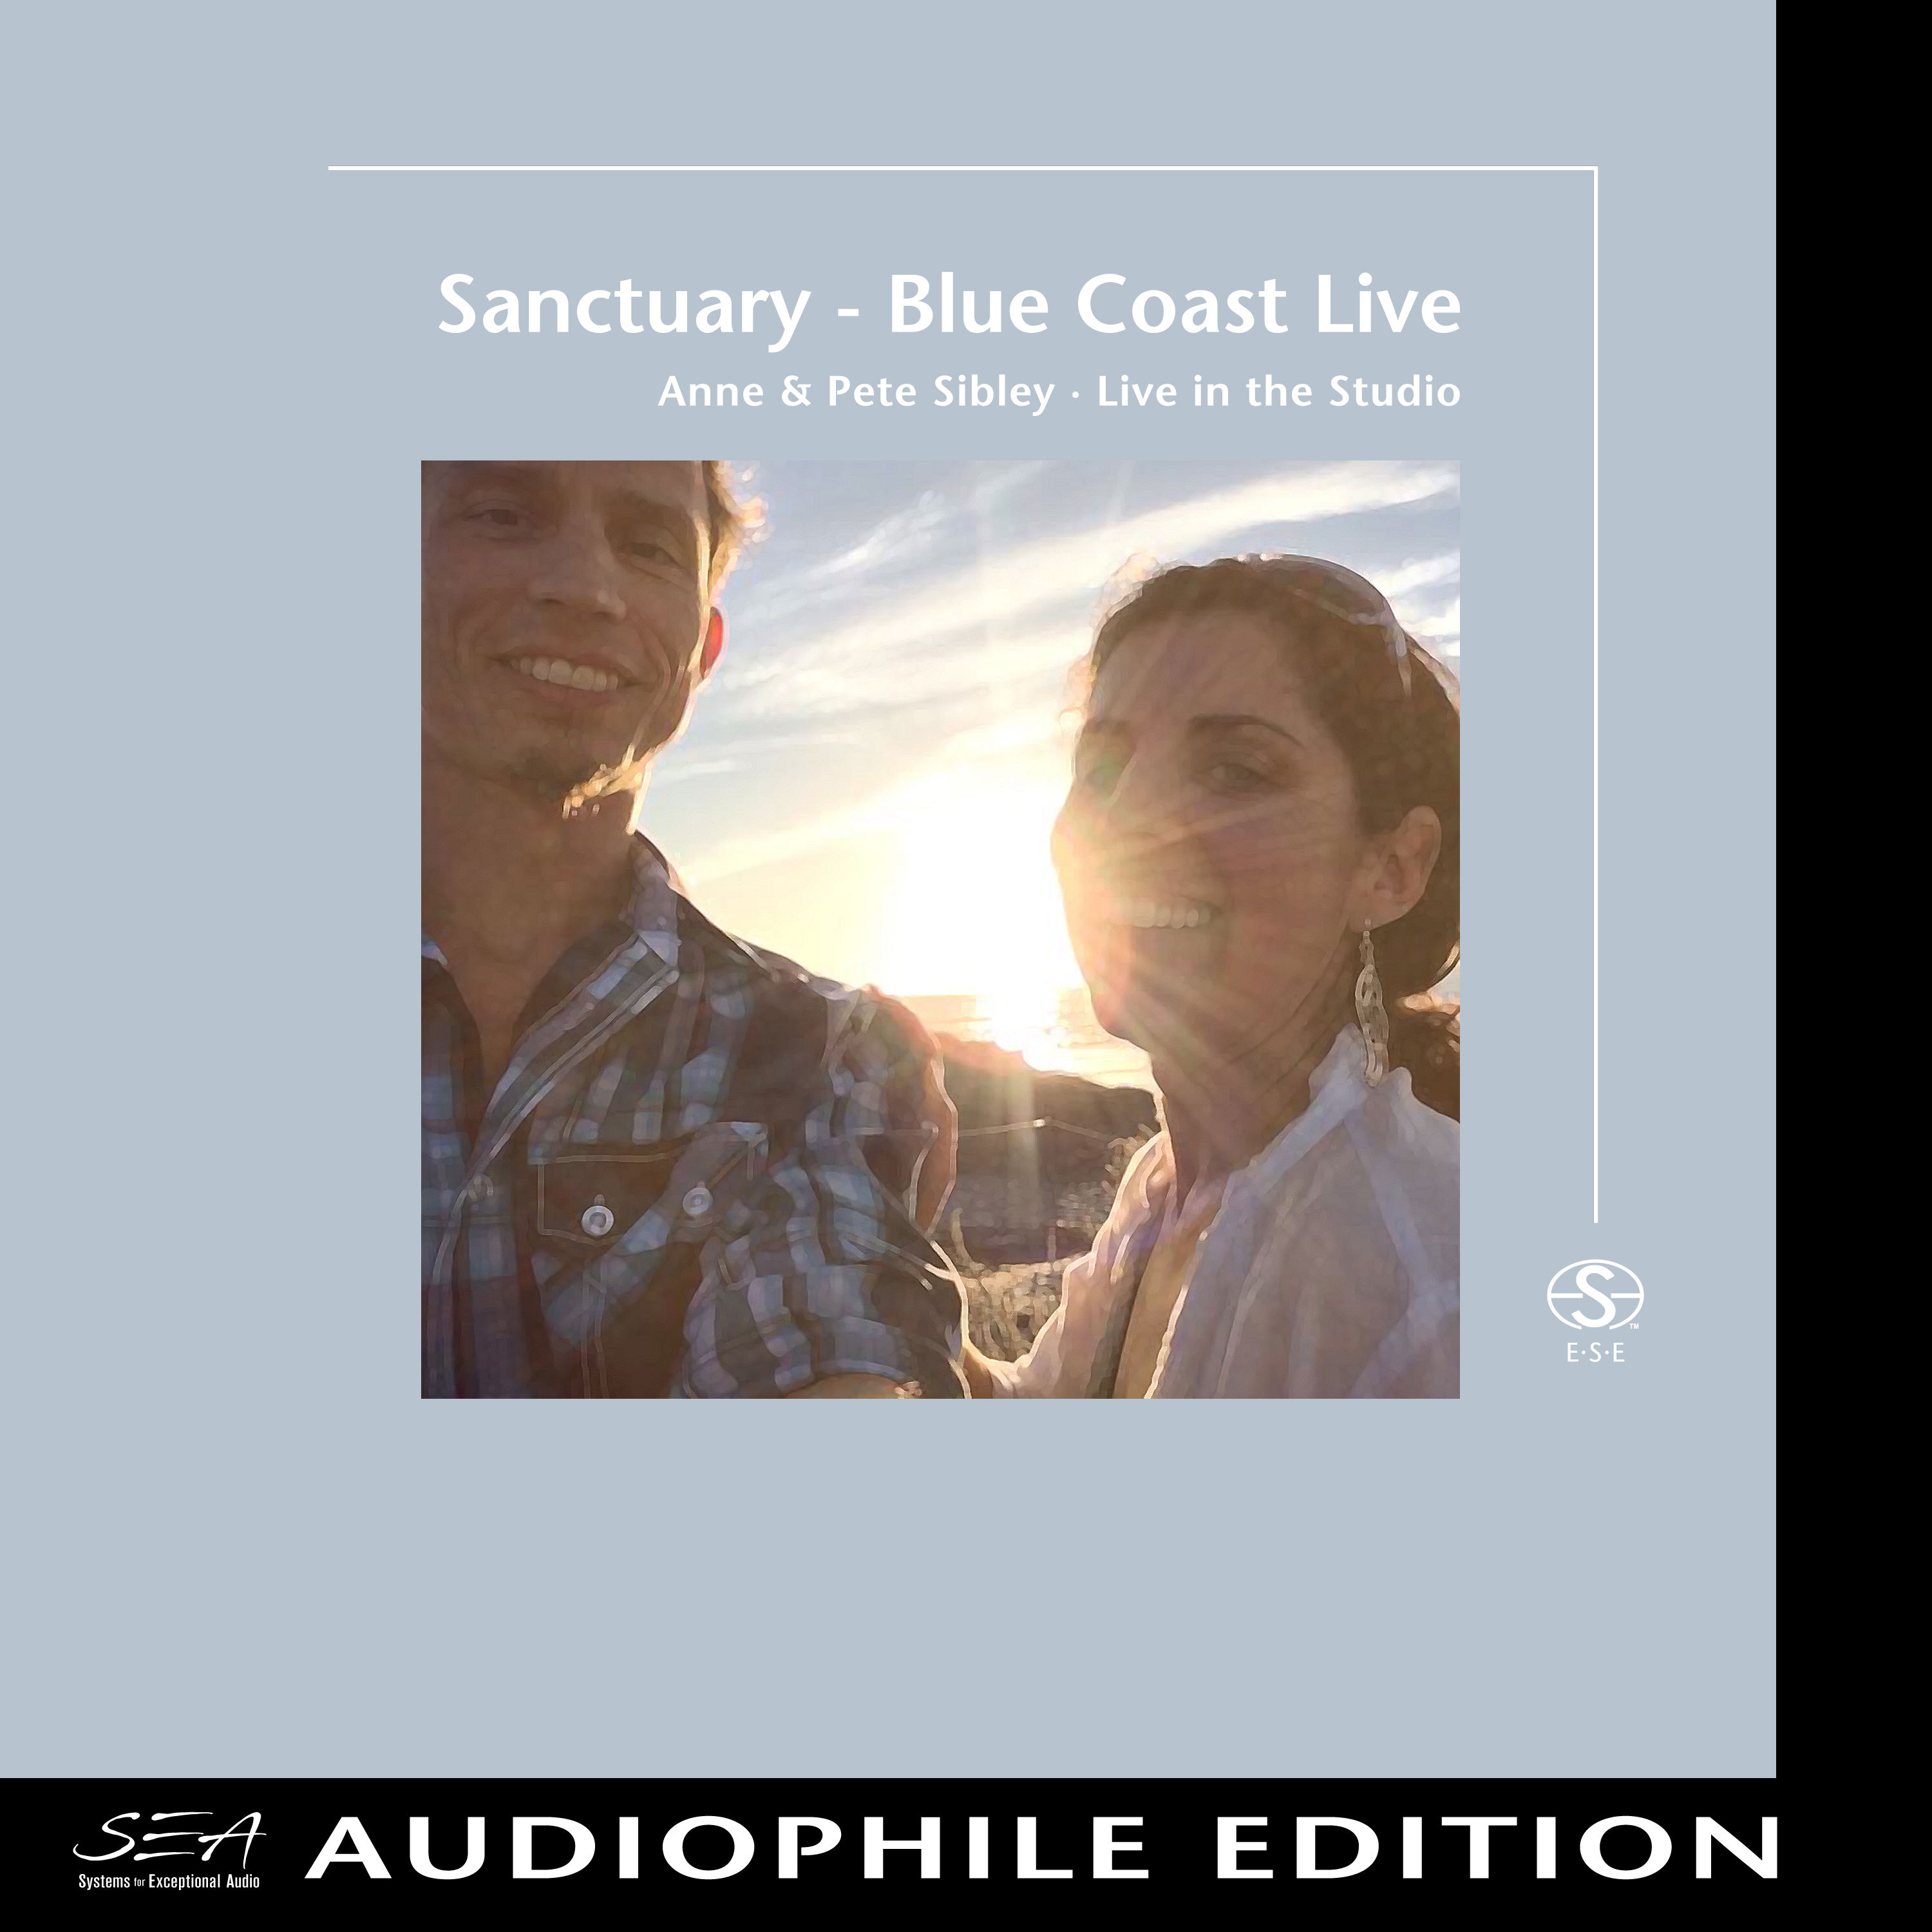 Anne & Pete Sibley – Sanctuary